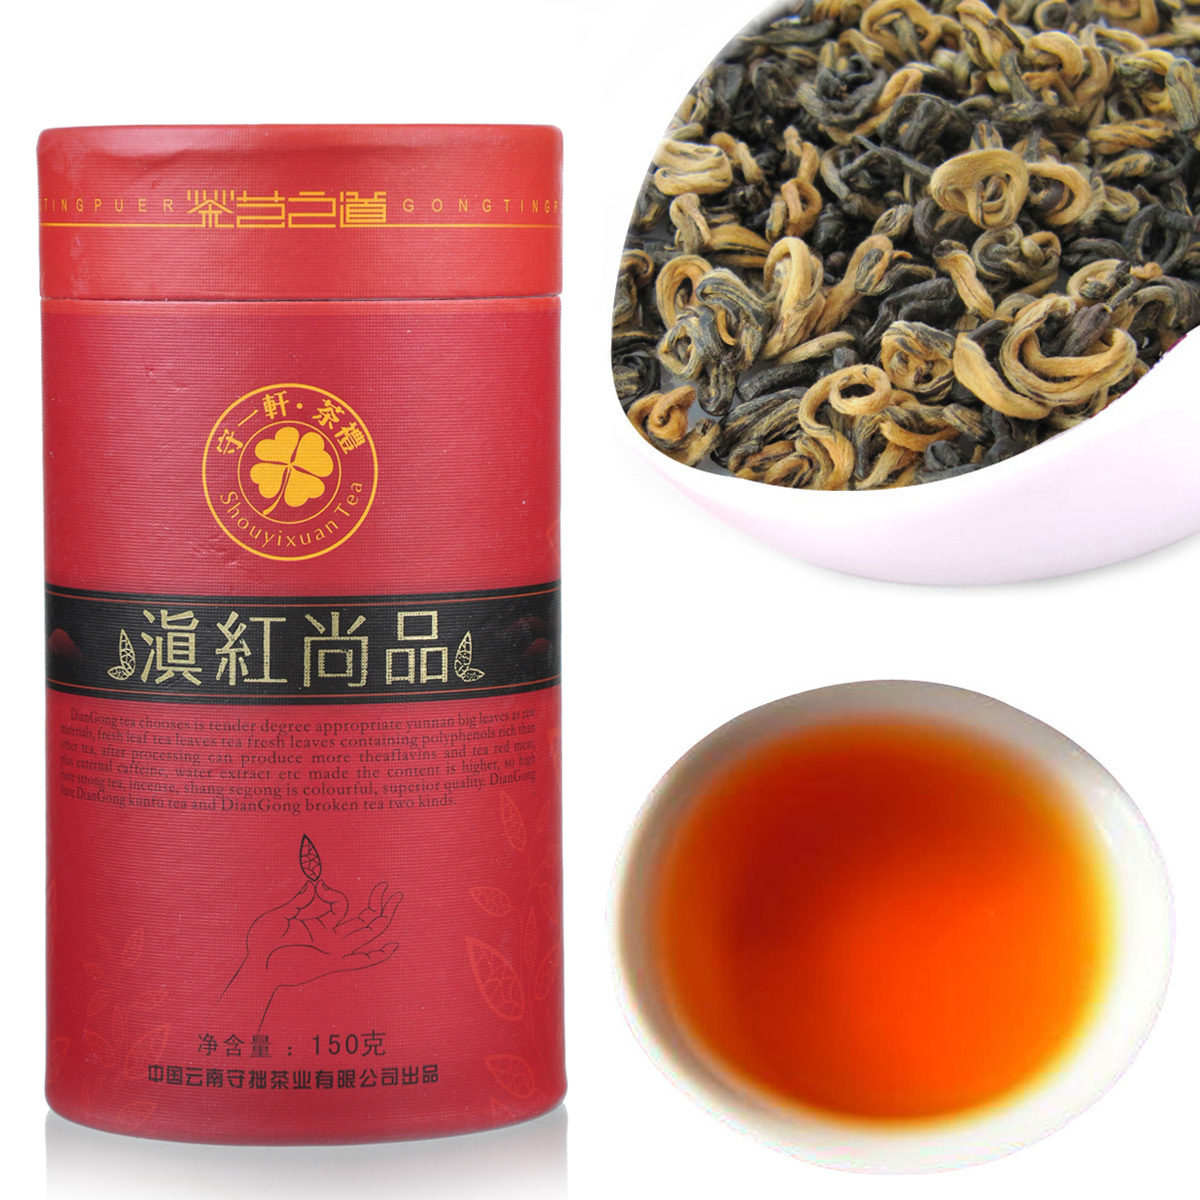 解惑茶疑问——红茶和绿茶有什么区别